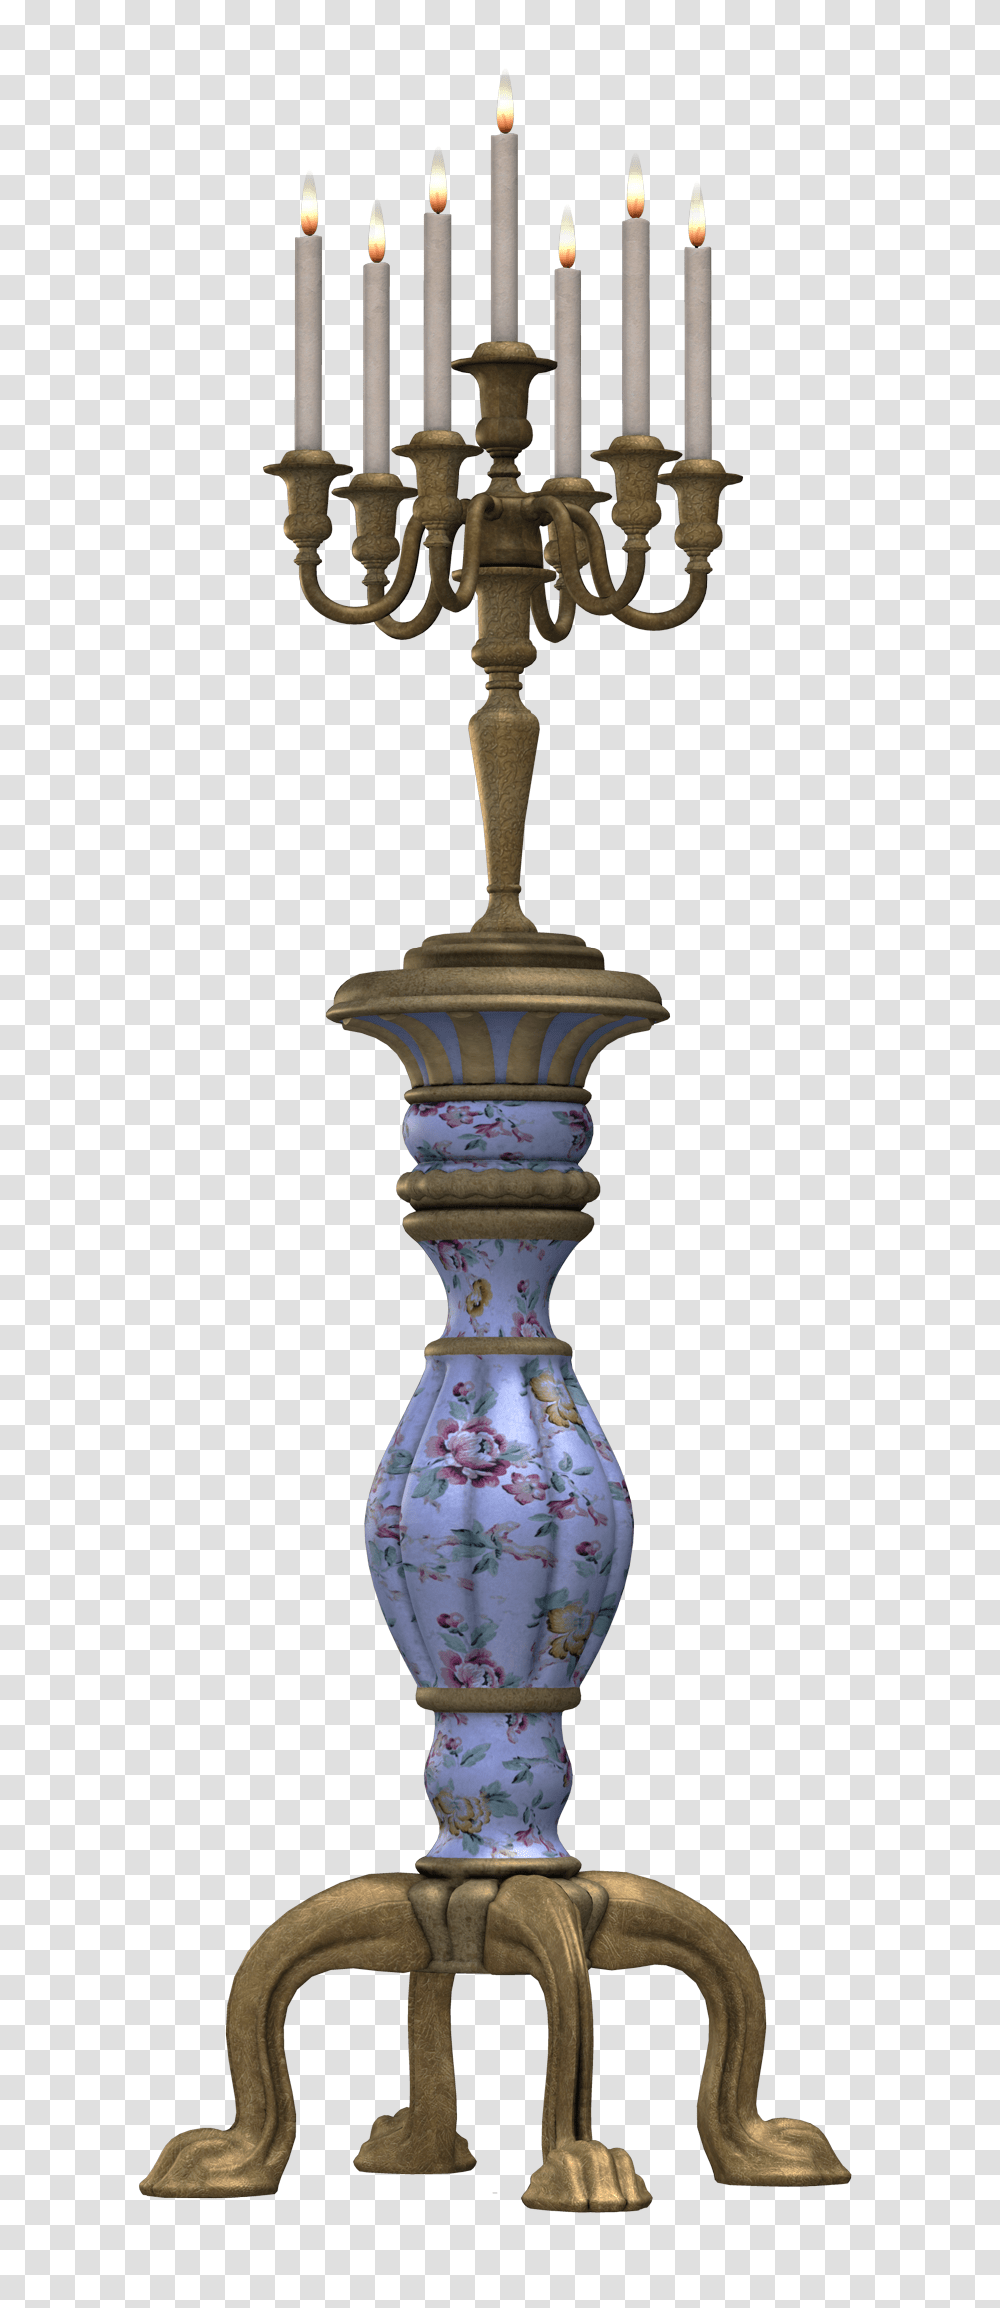 Candlestick Image, Lamp, Vase, Jar, Pottery Transparent Png